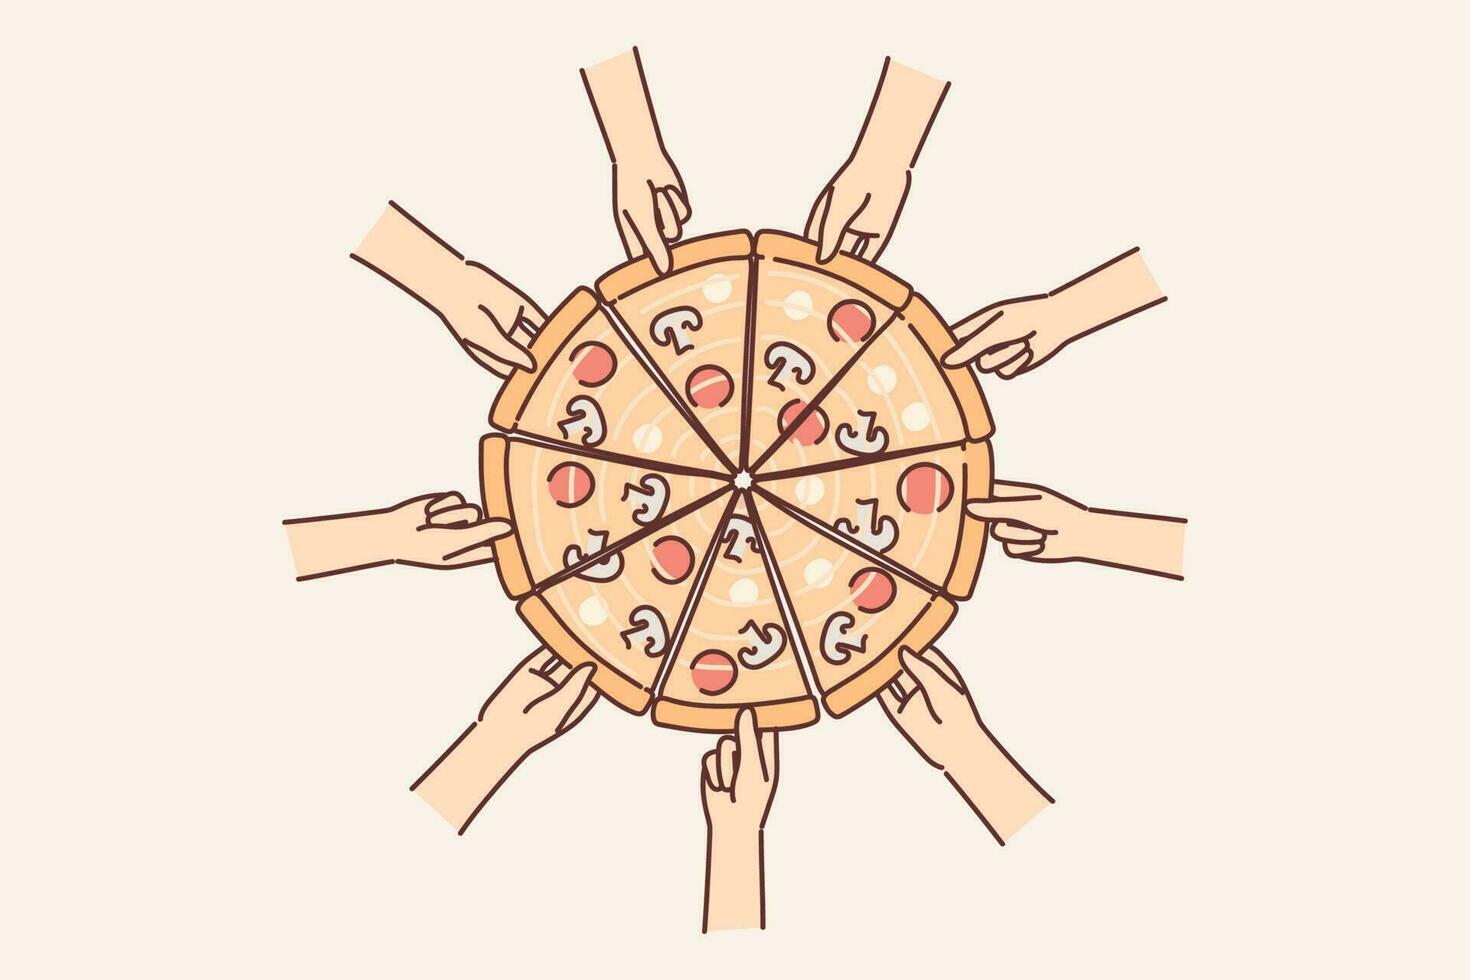 mains atteindre en dehors à Pizza à choisir en haut pièce de délicieux italien casse-croûte avec fromage et pepperoni. Haut vue de Pizza cuit selon à traditionnel italien cuisine recette avec champignons et tomates vecteur